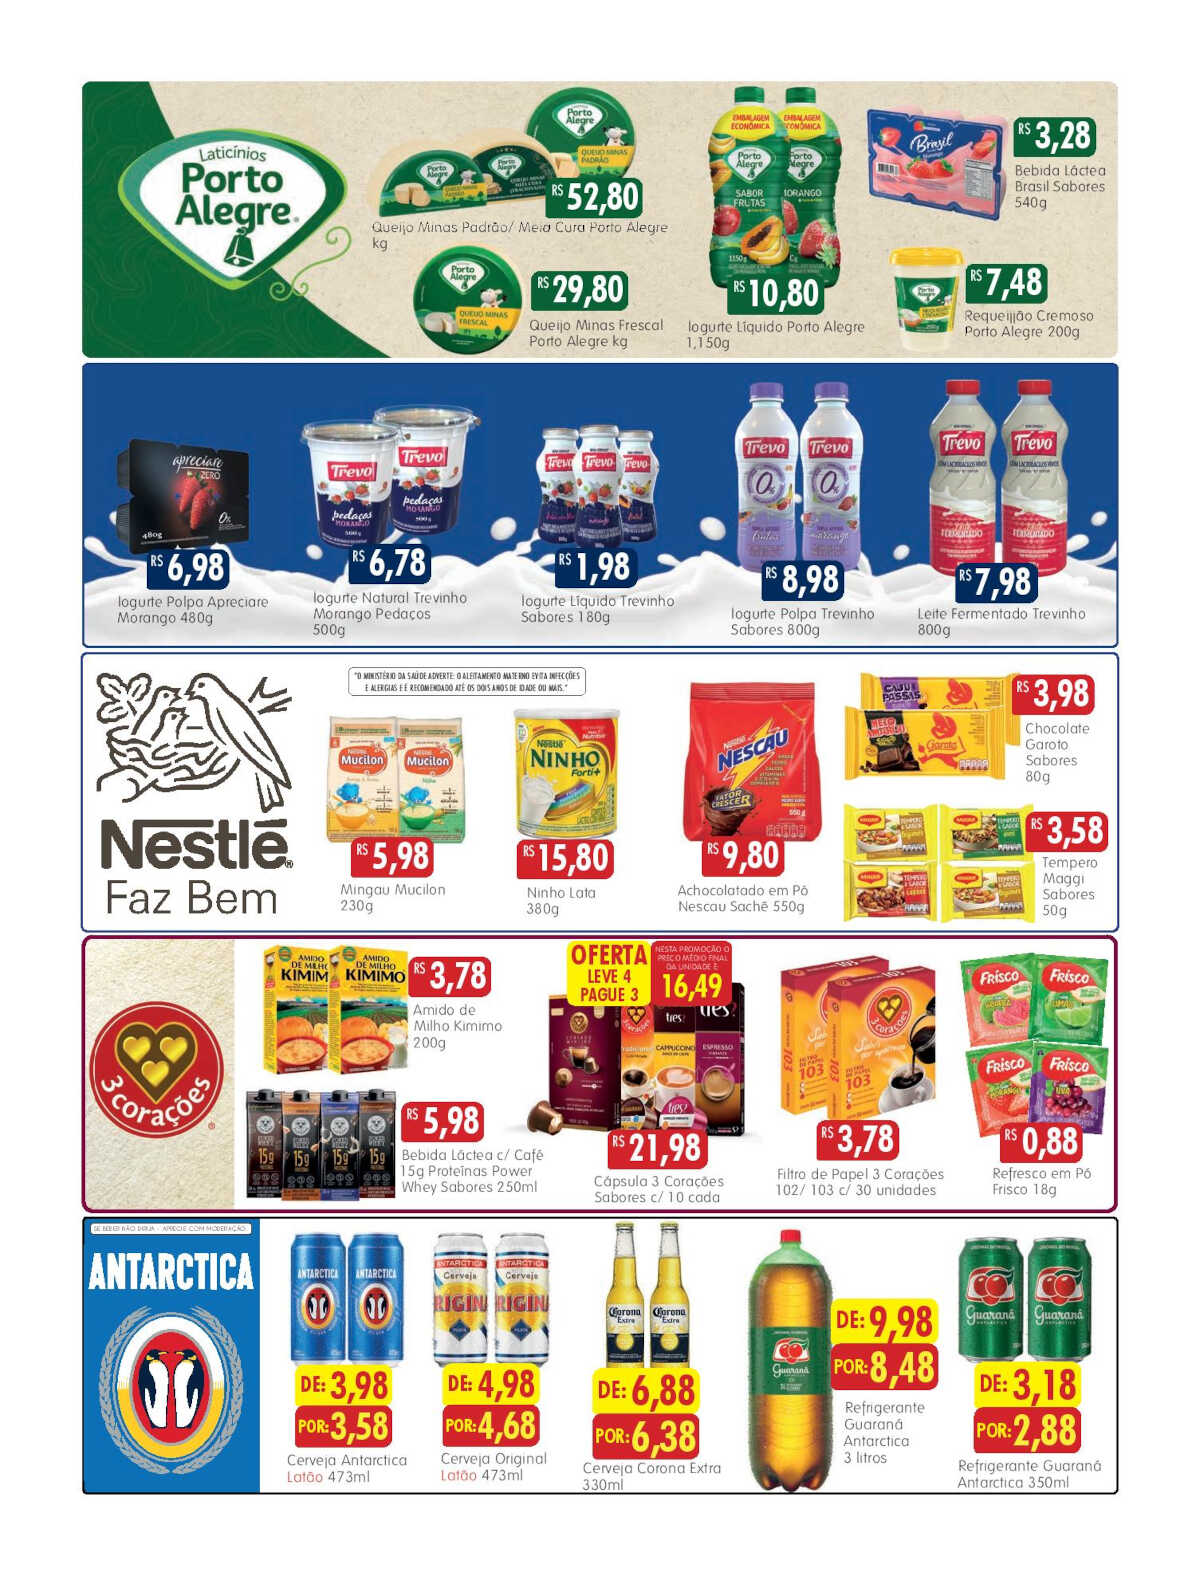 Ofertas Epa Supermercados até 30/04